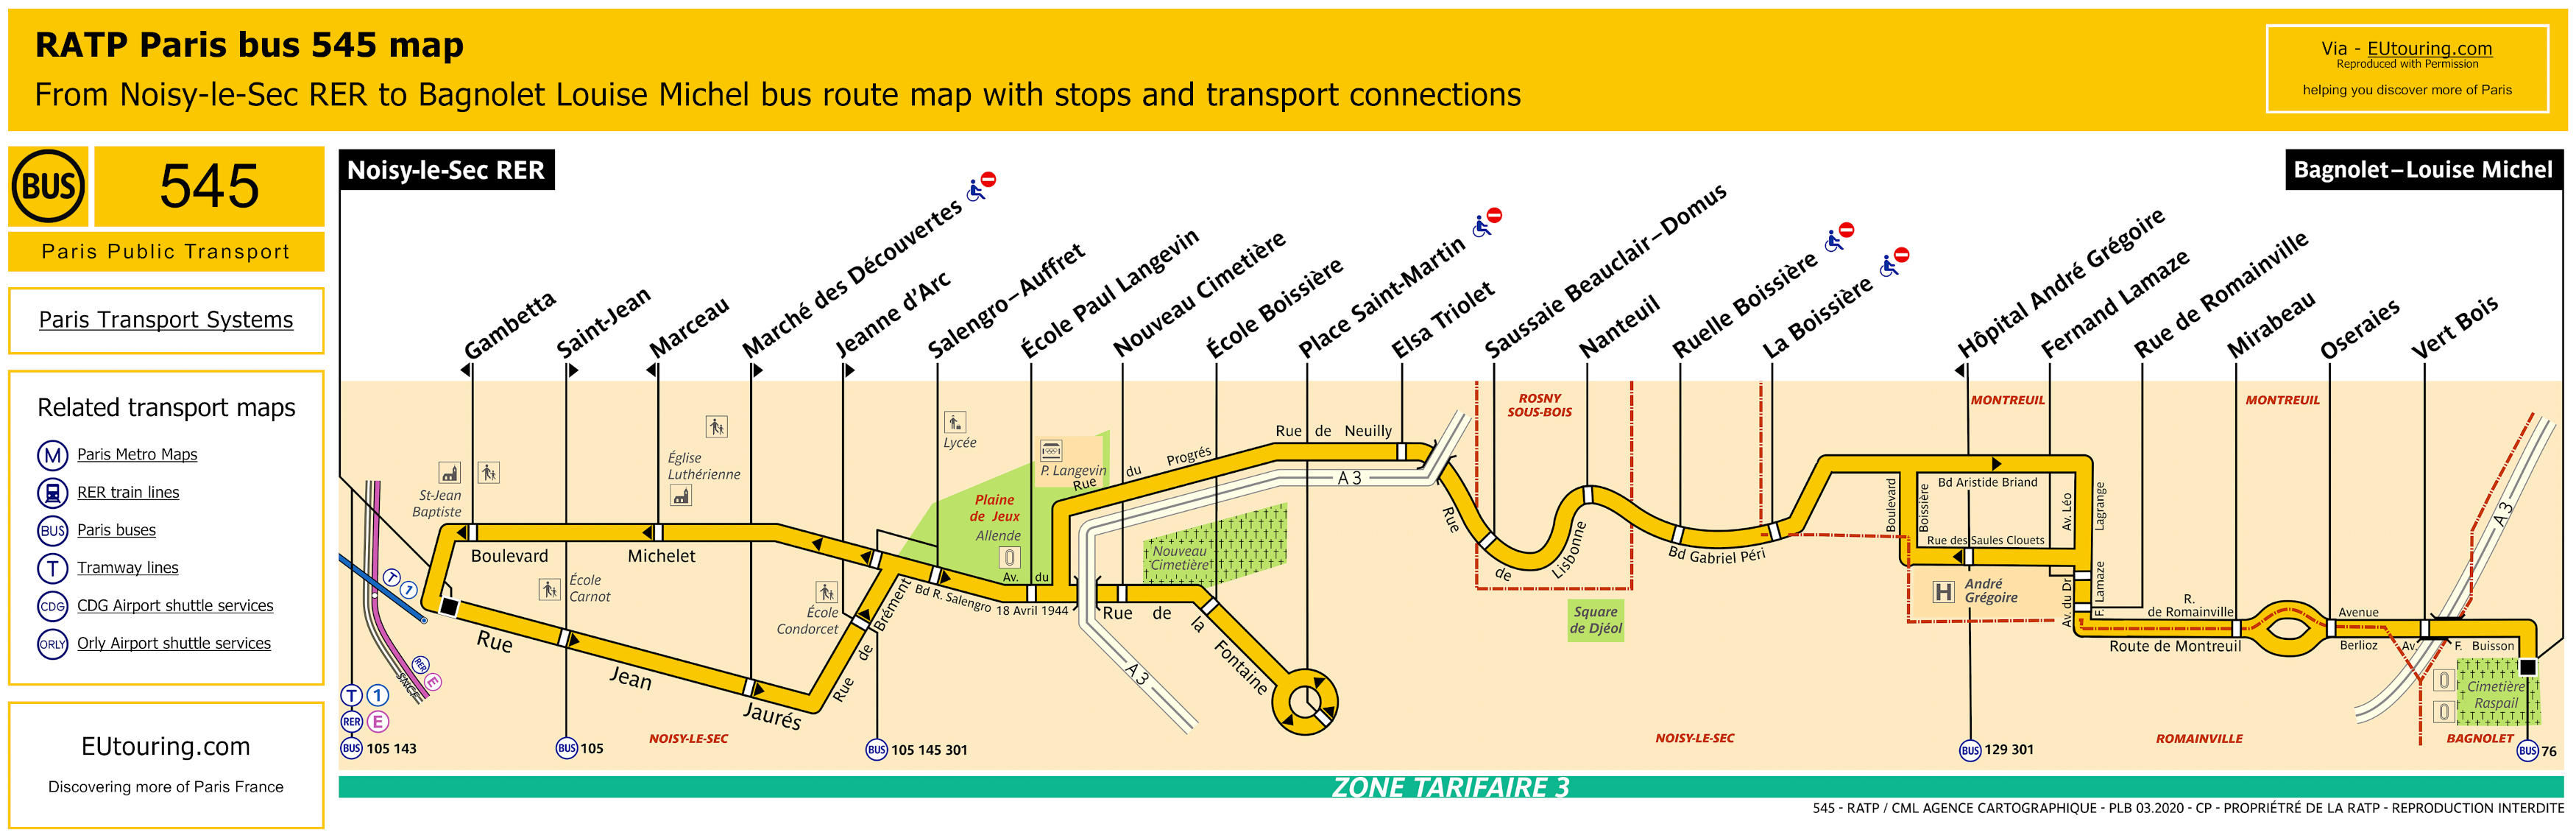 Paris bus 545 route maps available.